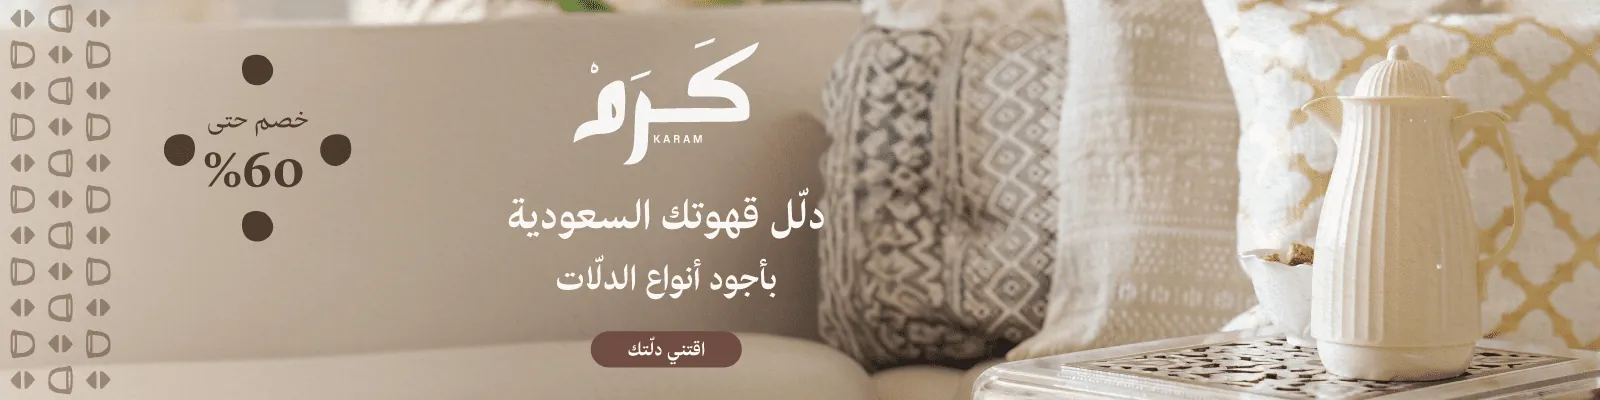 Founding Day karam flasks webnew-media